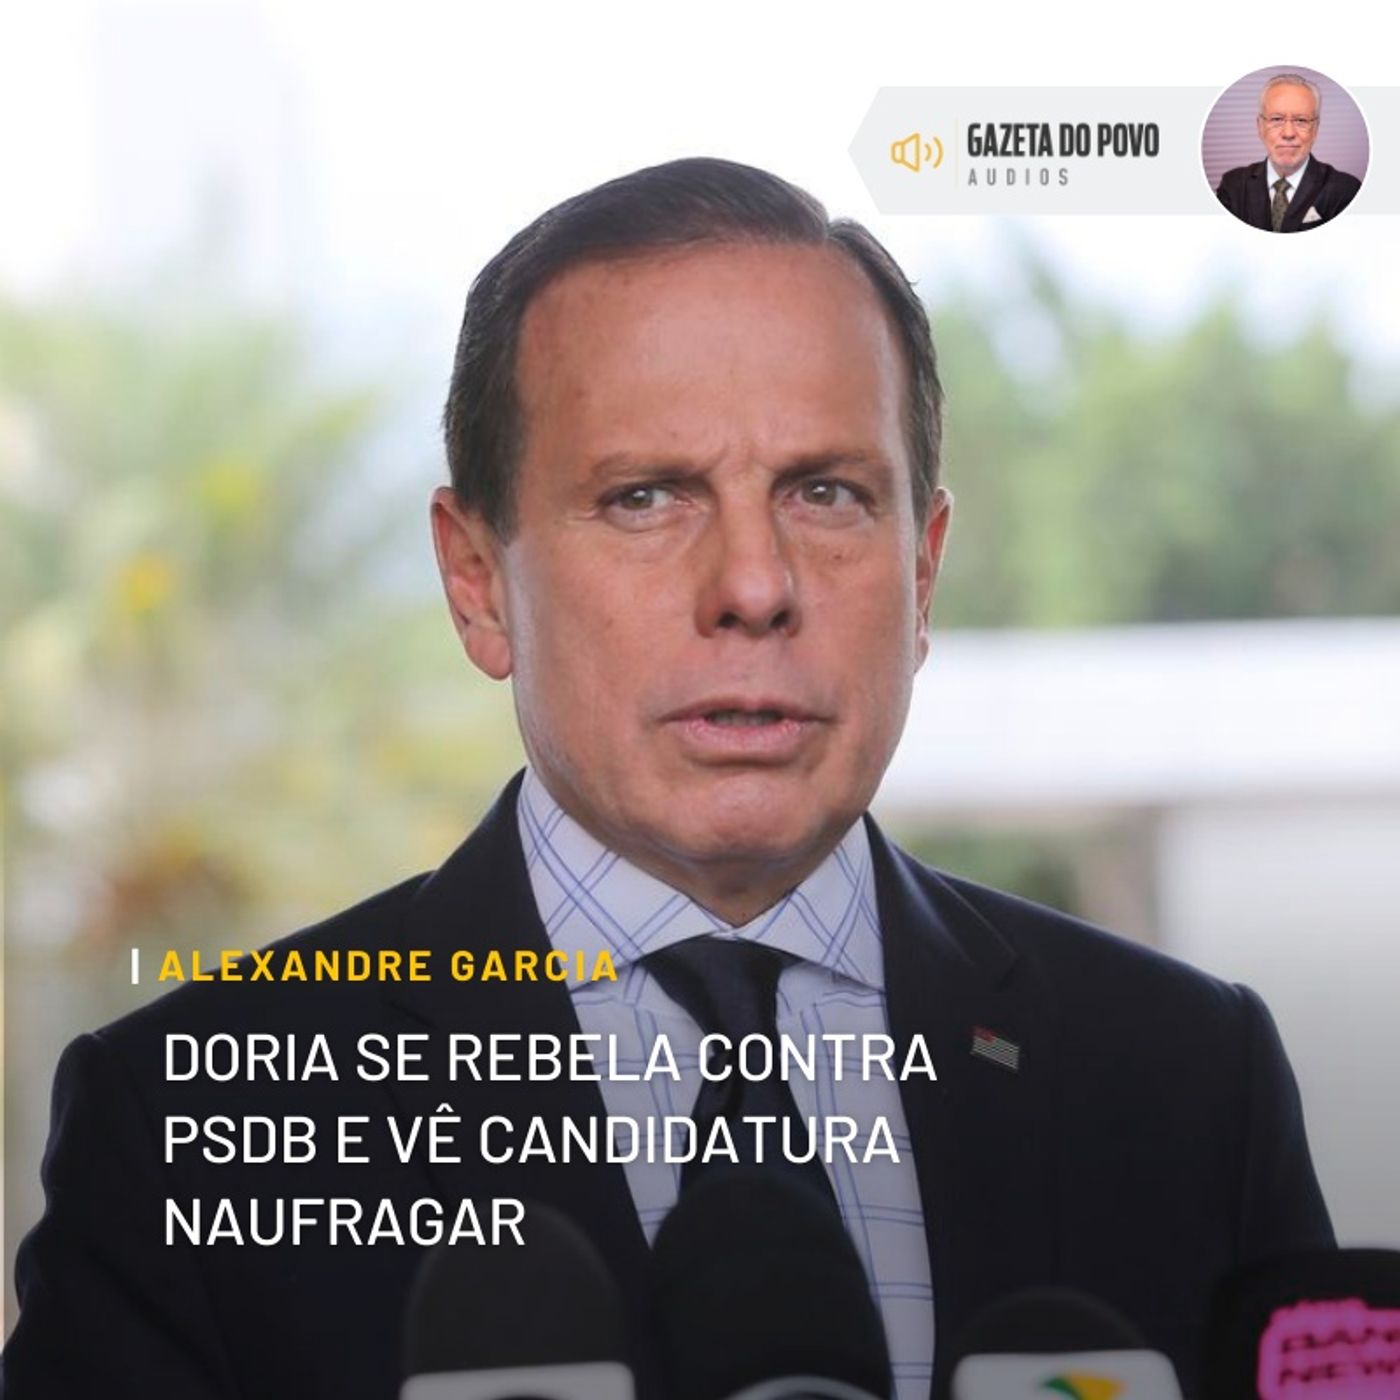 Doria se rebela contra PSDB e vê candidatura naufragar